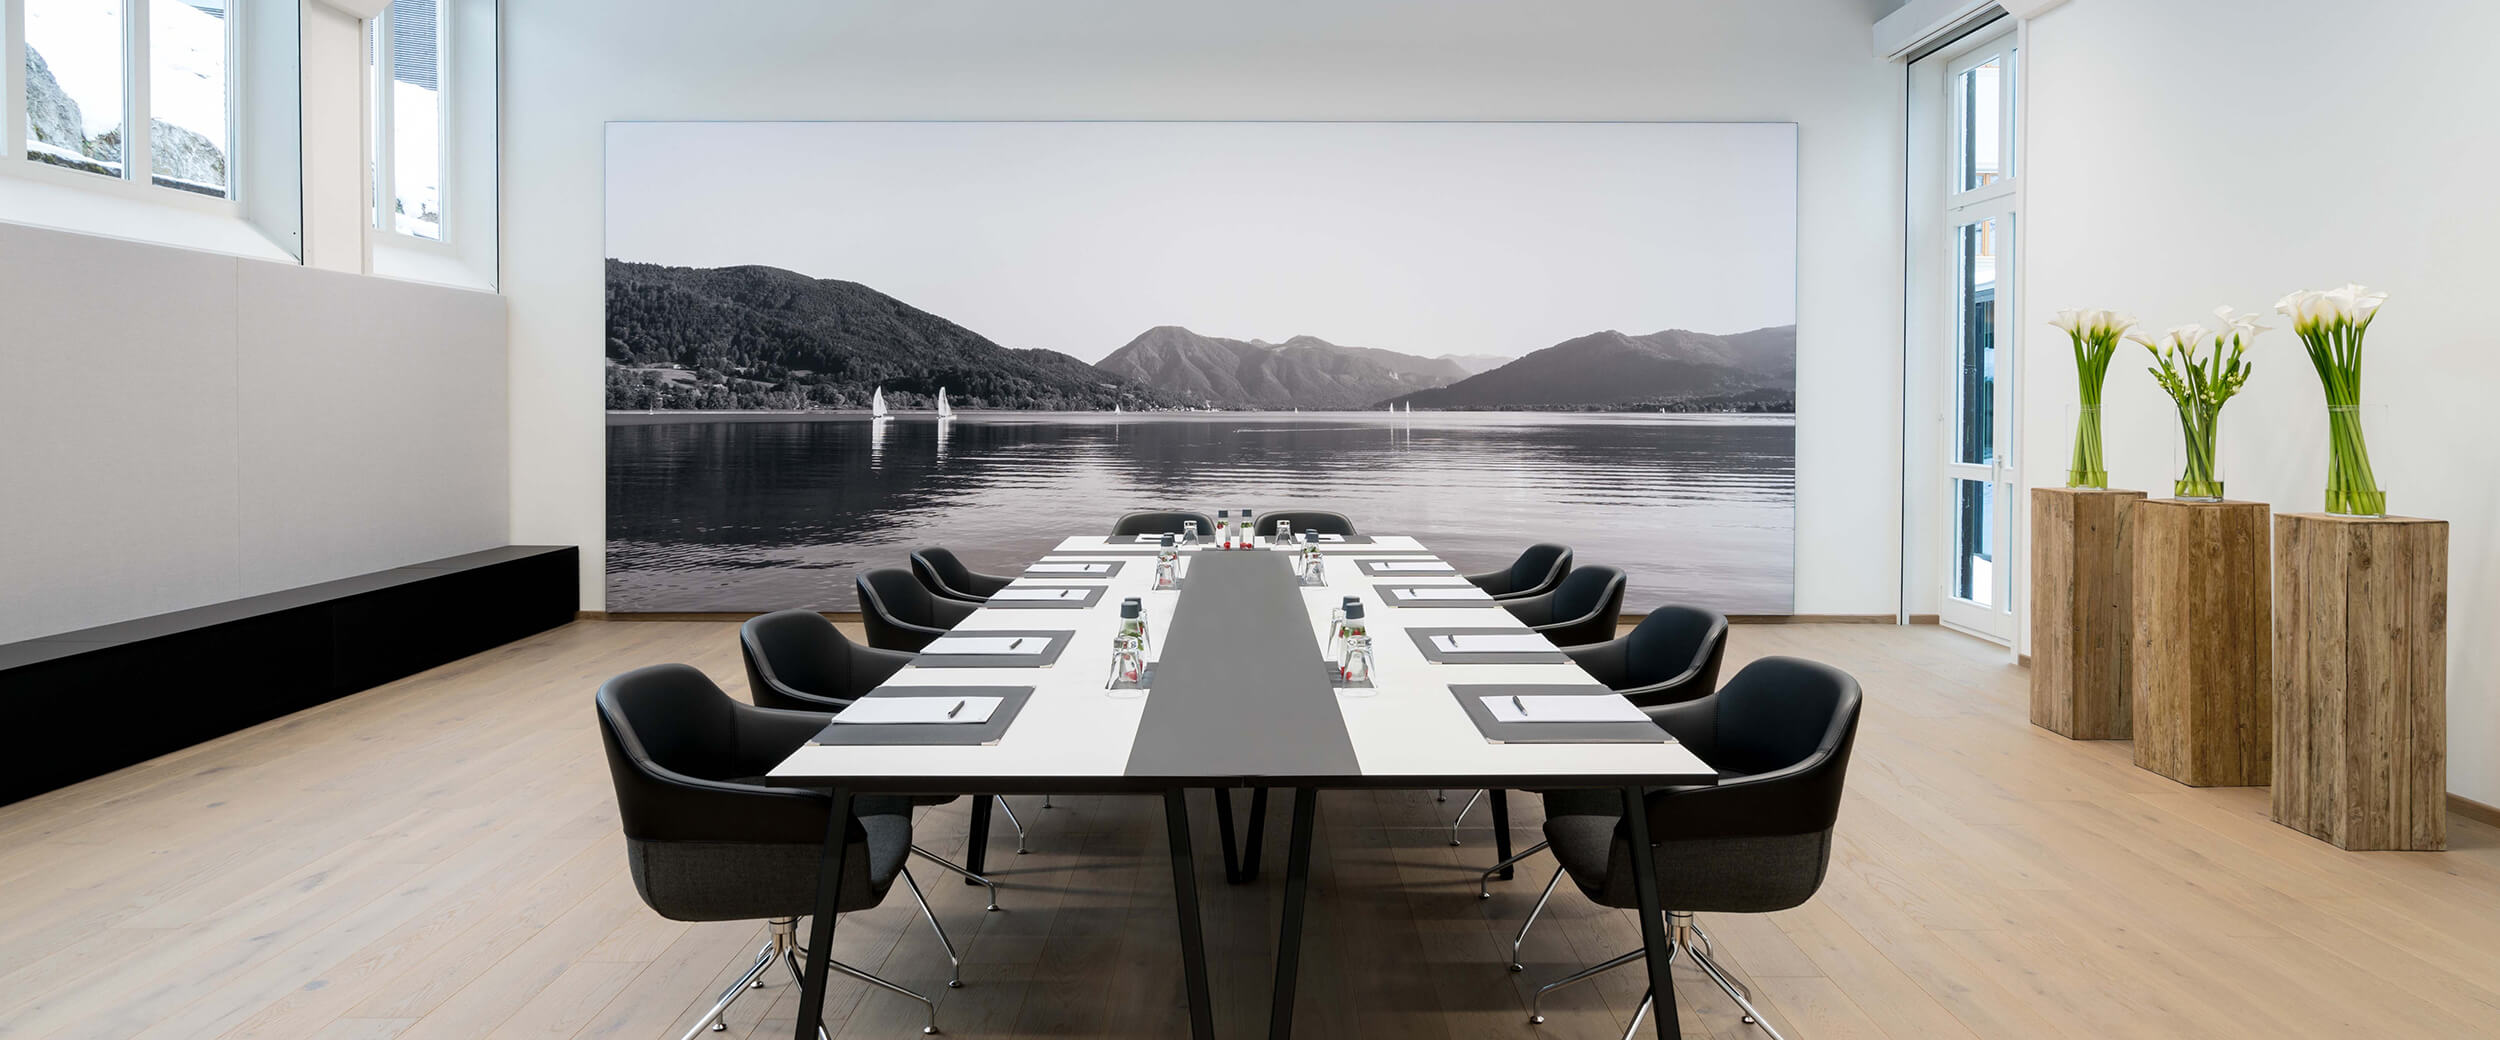 Blick in einen Tagungsraum im Hotel Das Tegernsee mit einem langen, weißen Konferenztisch und schwarzen modernen Armlehnen-Stühlen für korporative Veranstaltungen am Tegernsee